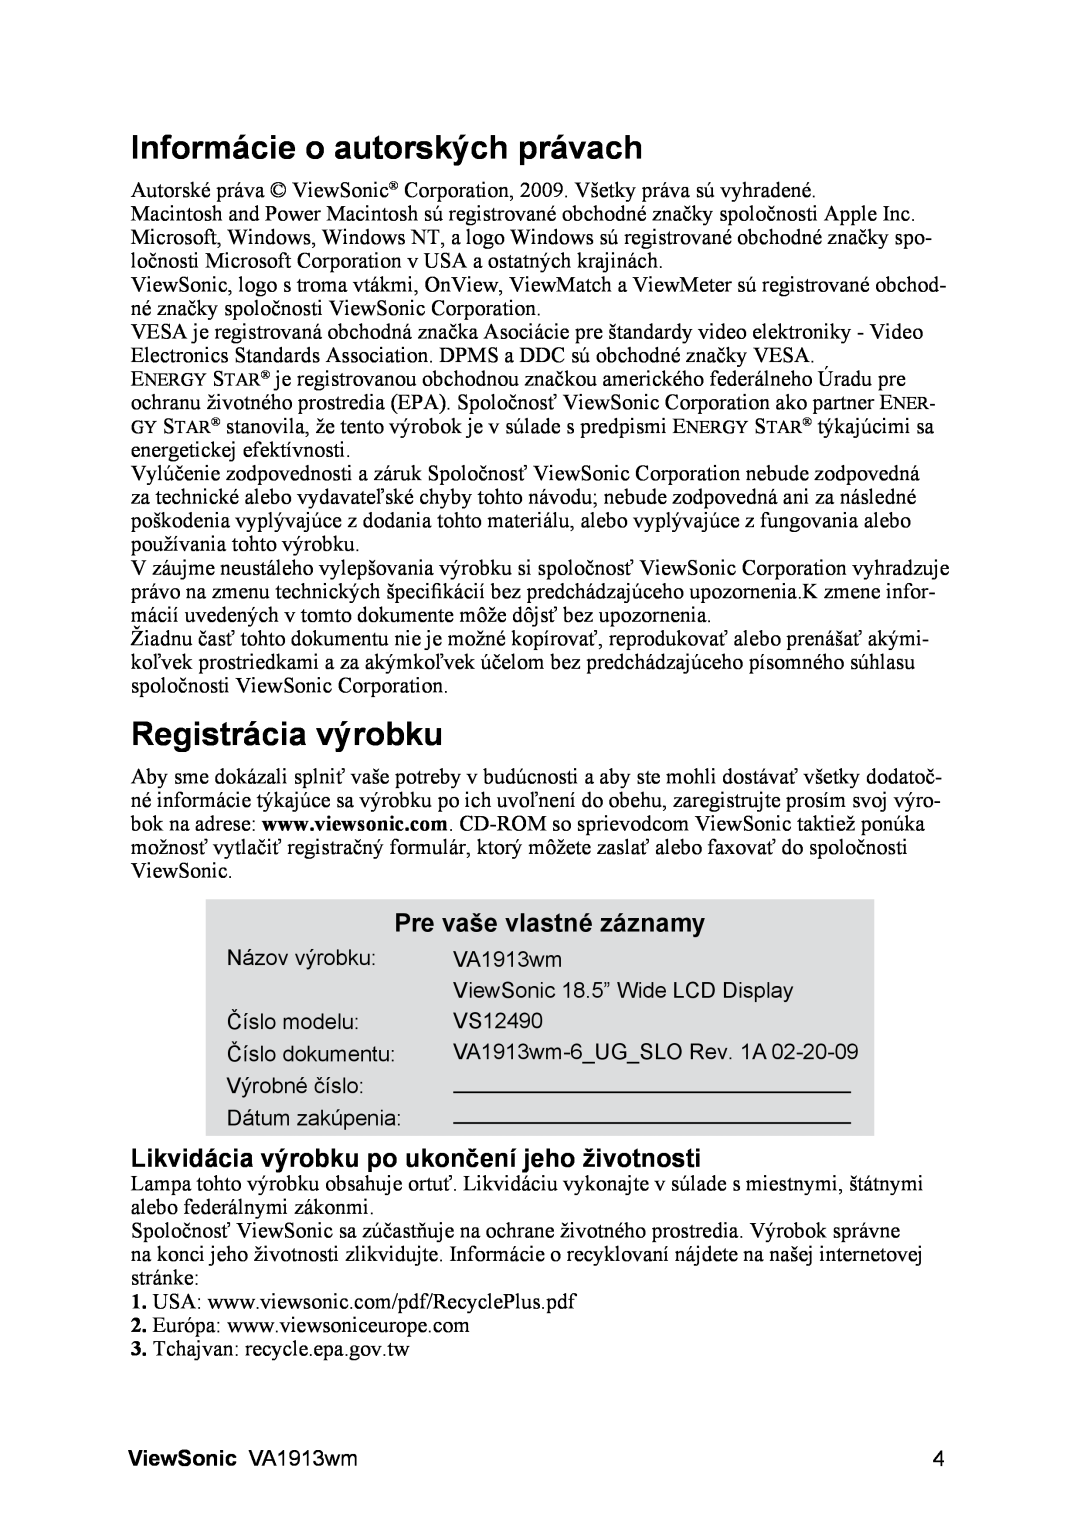 ViewSonic manual Informácie o autorských právach, Registrácia výrobku, Pre vaše vlastné záznamy, ViewSonic VA1913wm 